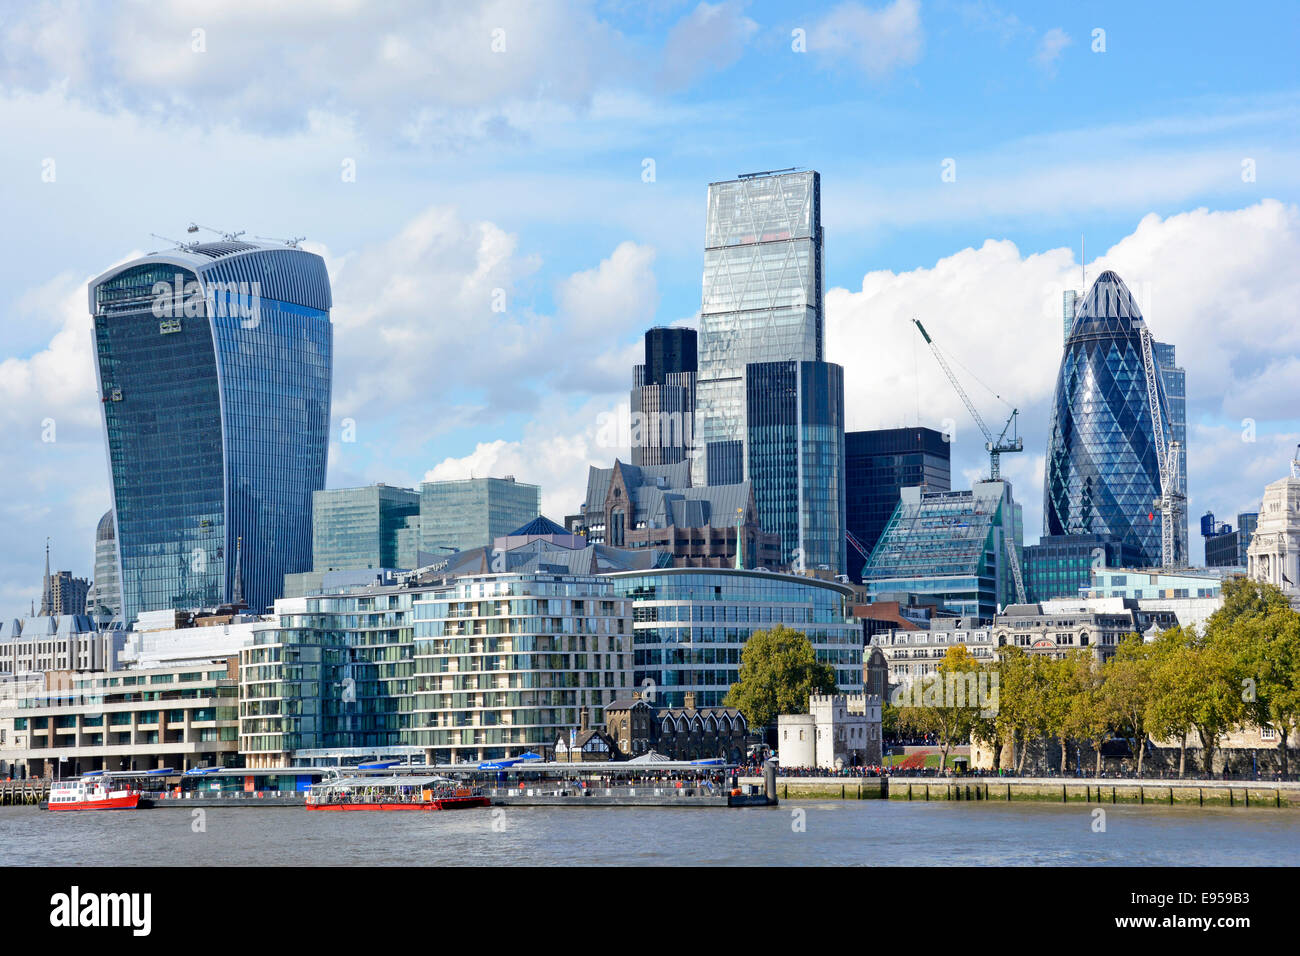 Les gratte-ciel de Gherkin Cheesegrater et Walkie Talkie dominent le paysage urbain de la ville de Londres Skyline Angleterre Royaume-Uni Banque D'Images